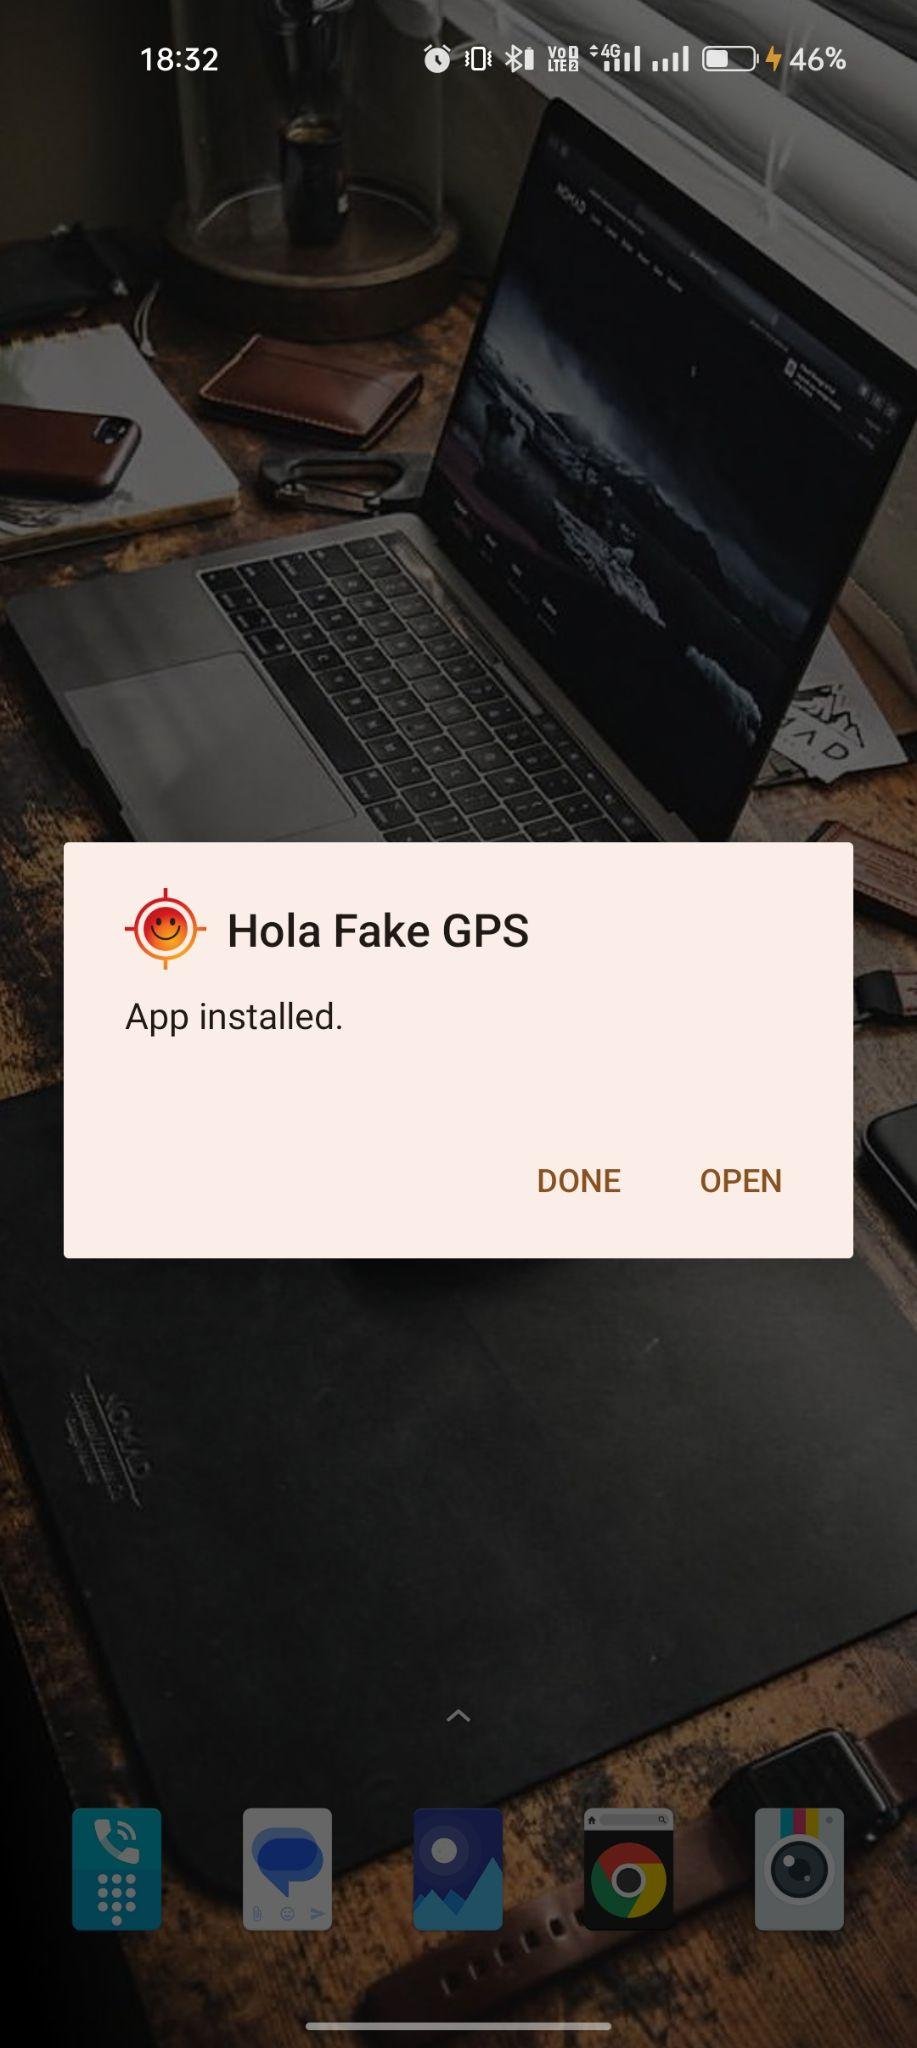 Hola Fake GPS apk installed